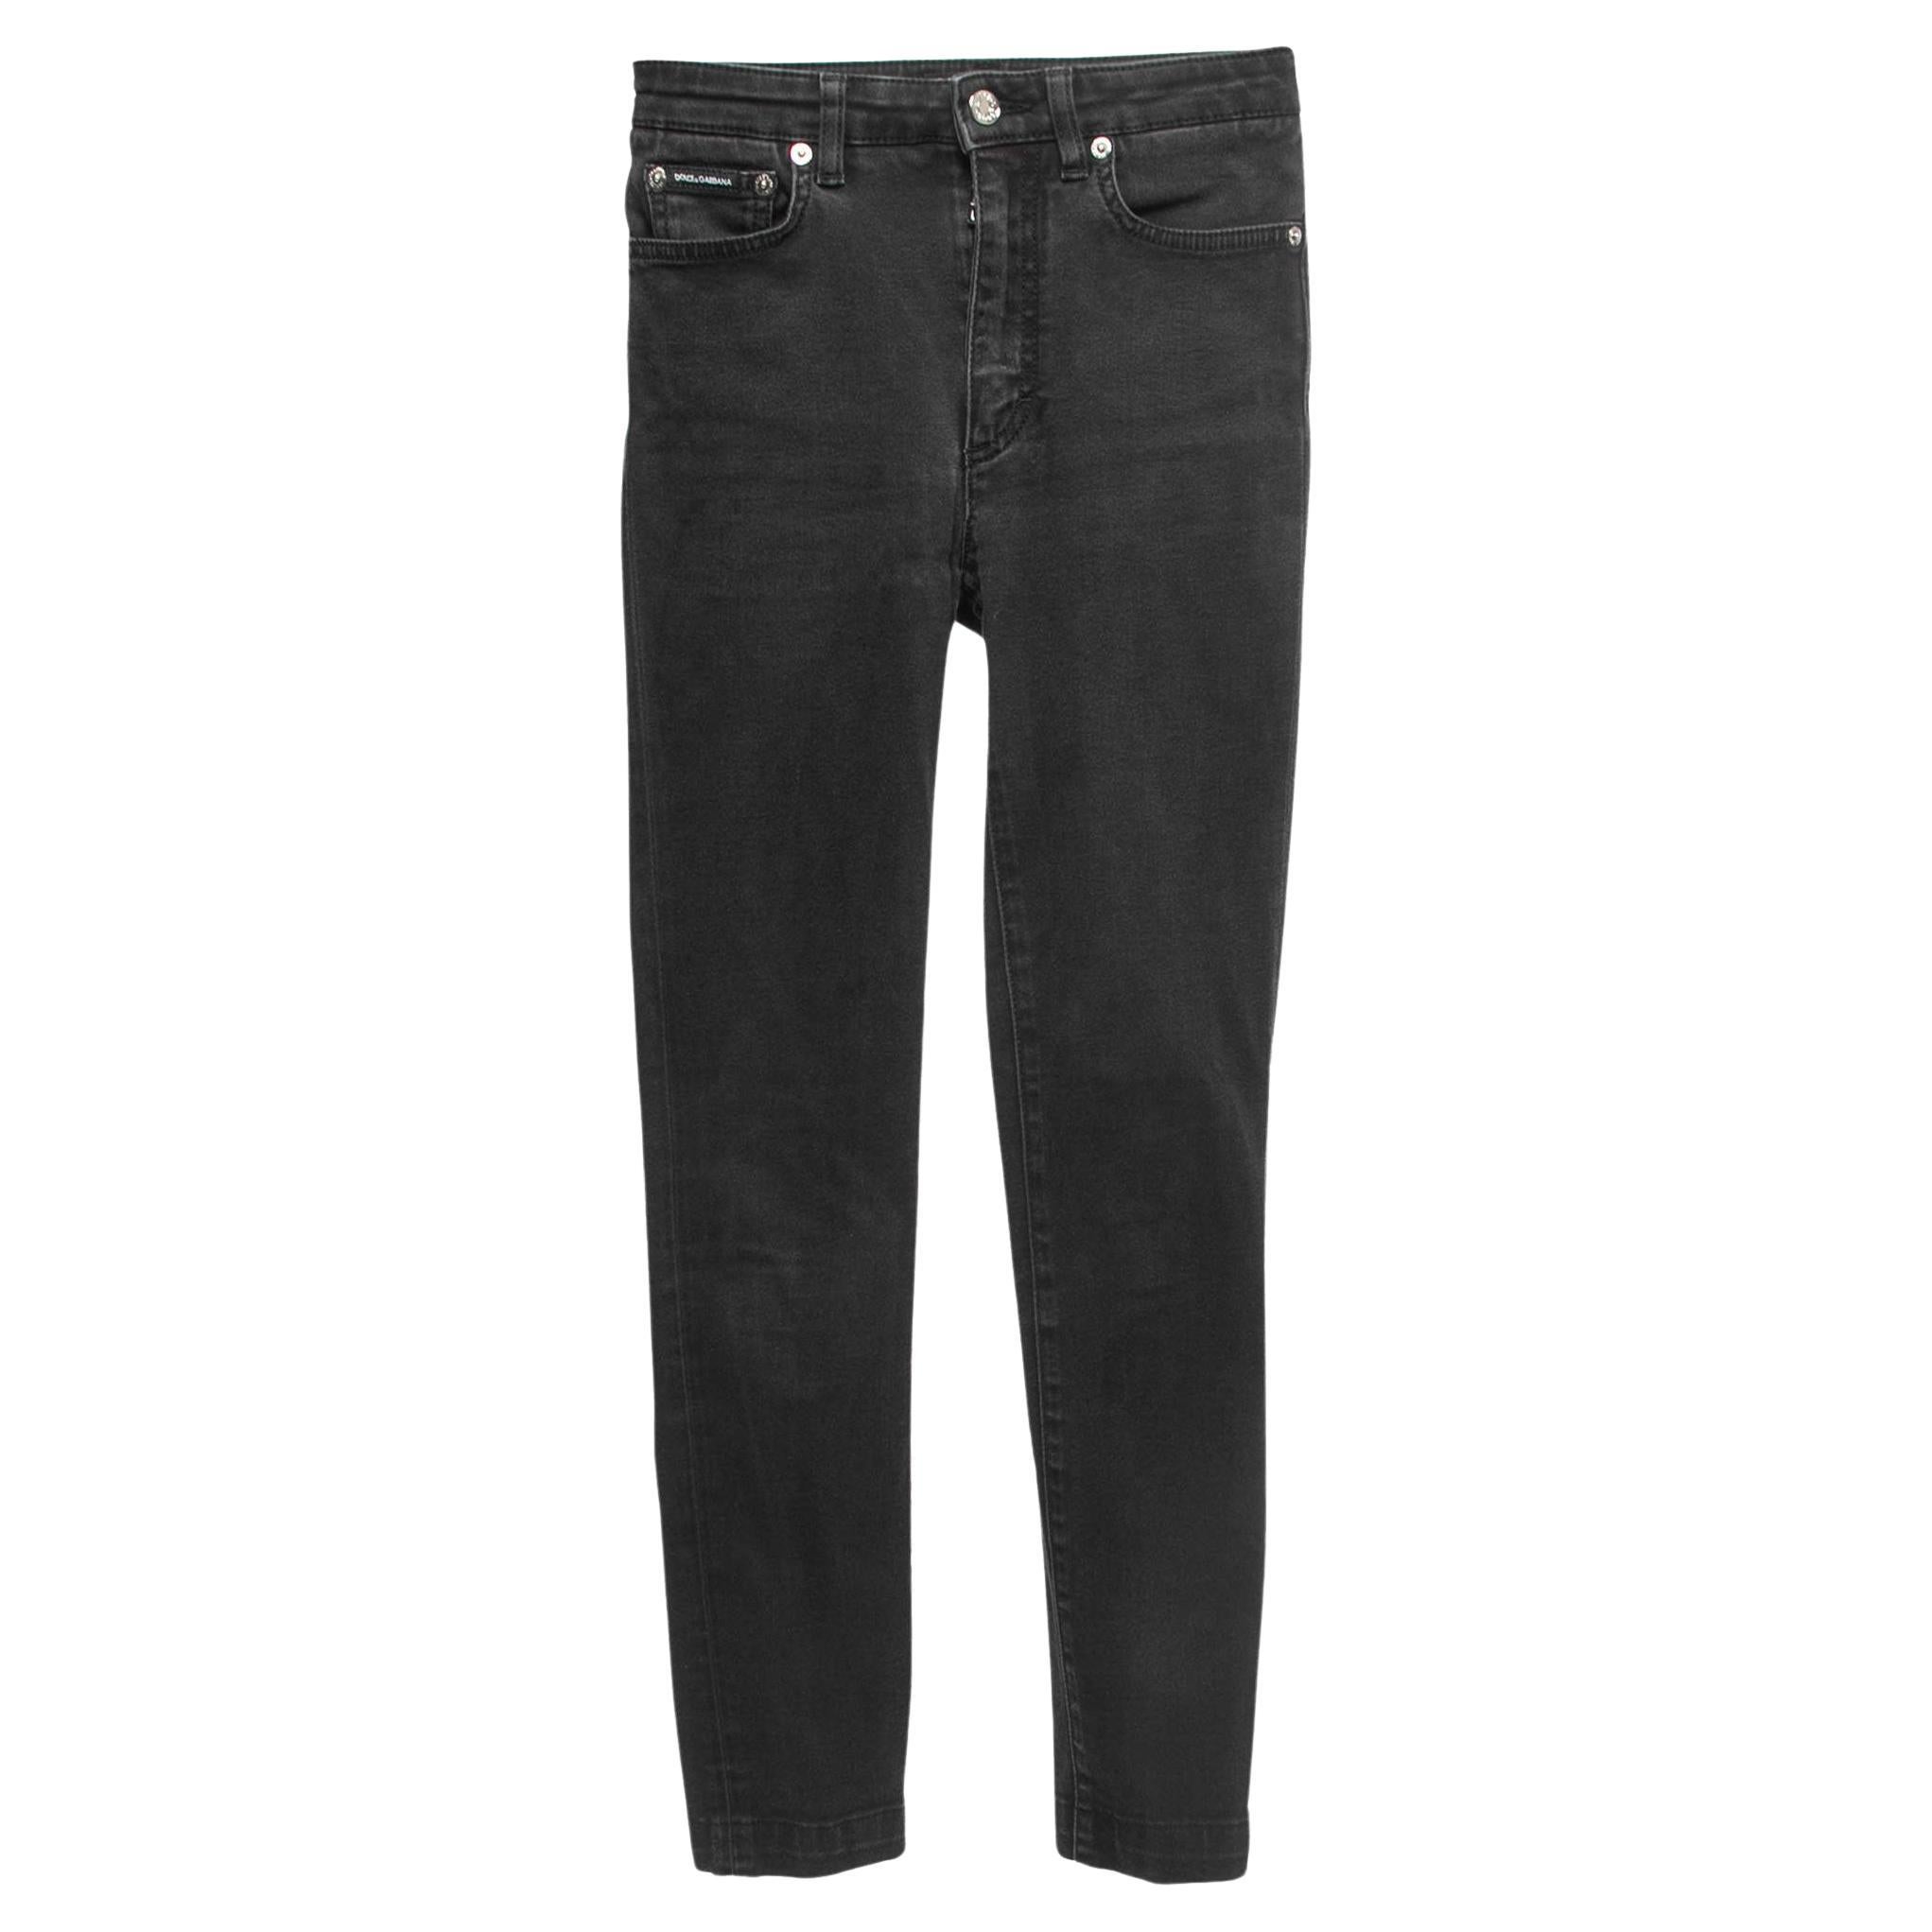 Dolce & Gabbana Black Denim Audrey Skinny Jeans XS Waist 24" For Sale